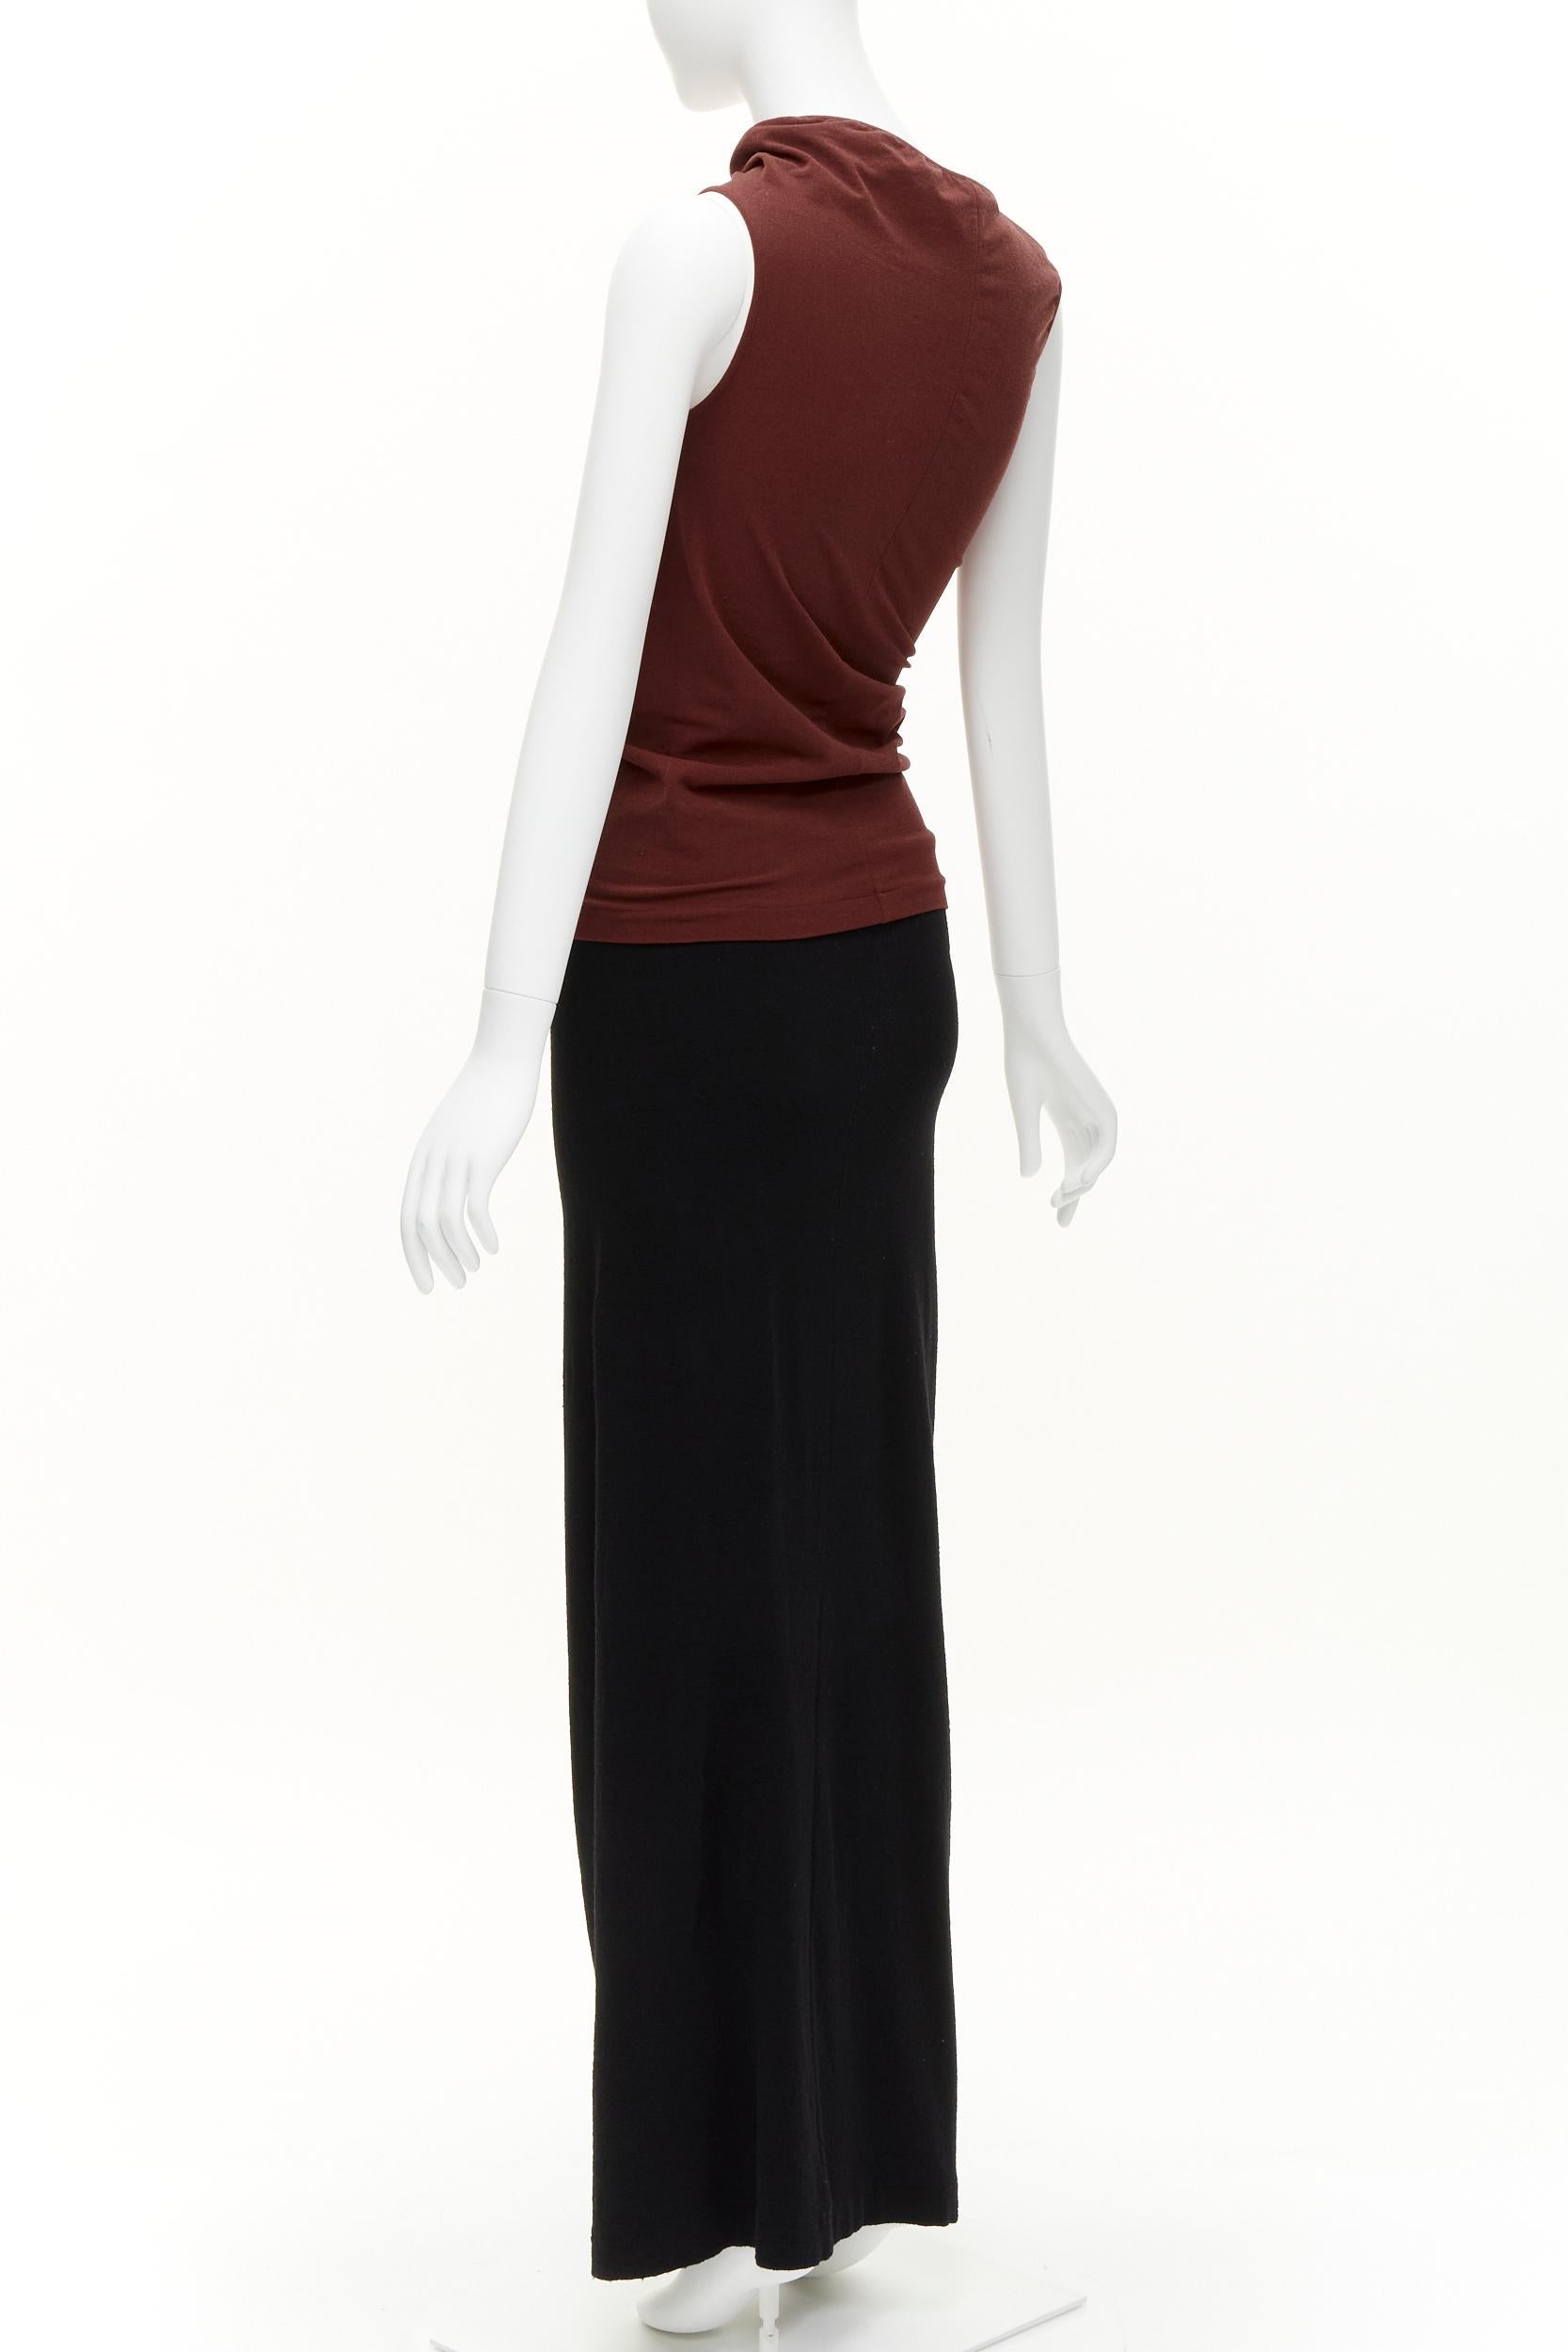 COMME DES GARCONS Vintage 1997 Lumps & Bumps red asymmetric top black skirt M For Sale 1